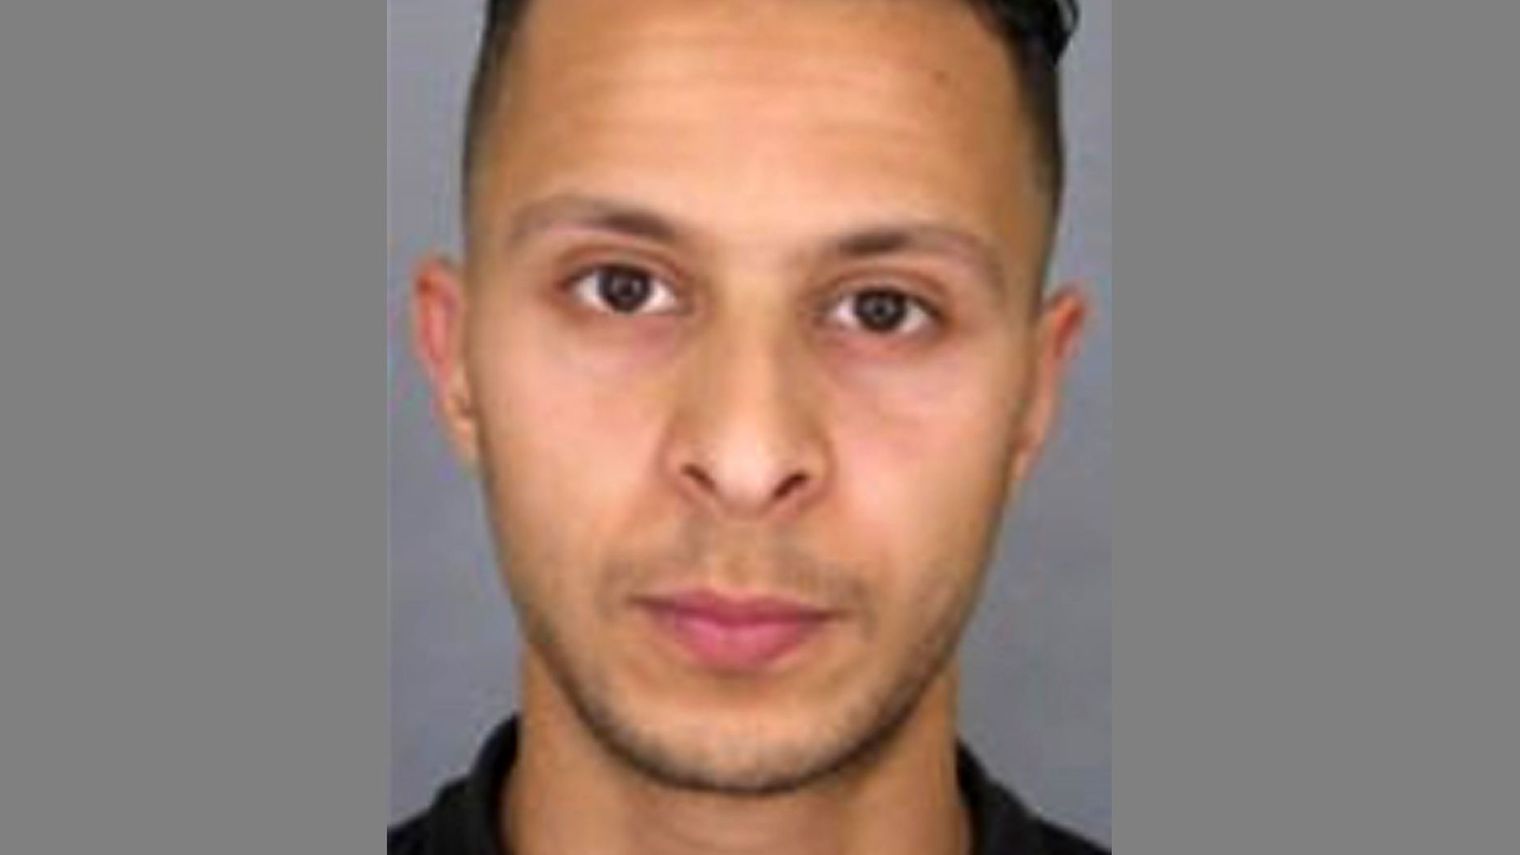 Attentats de Paris: Salah Abdeslam a quitté l'hôpital Saint-Pierre de Bruxelles